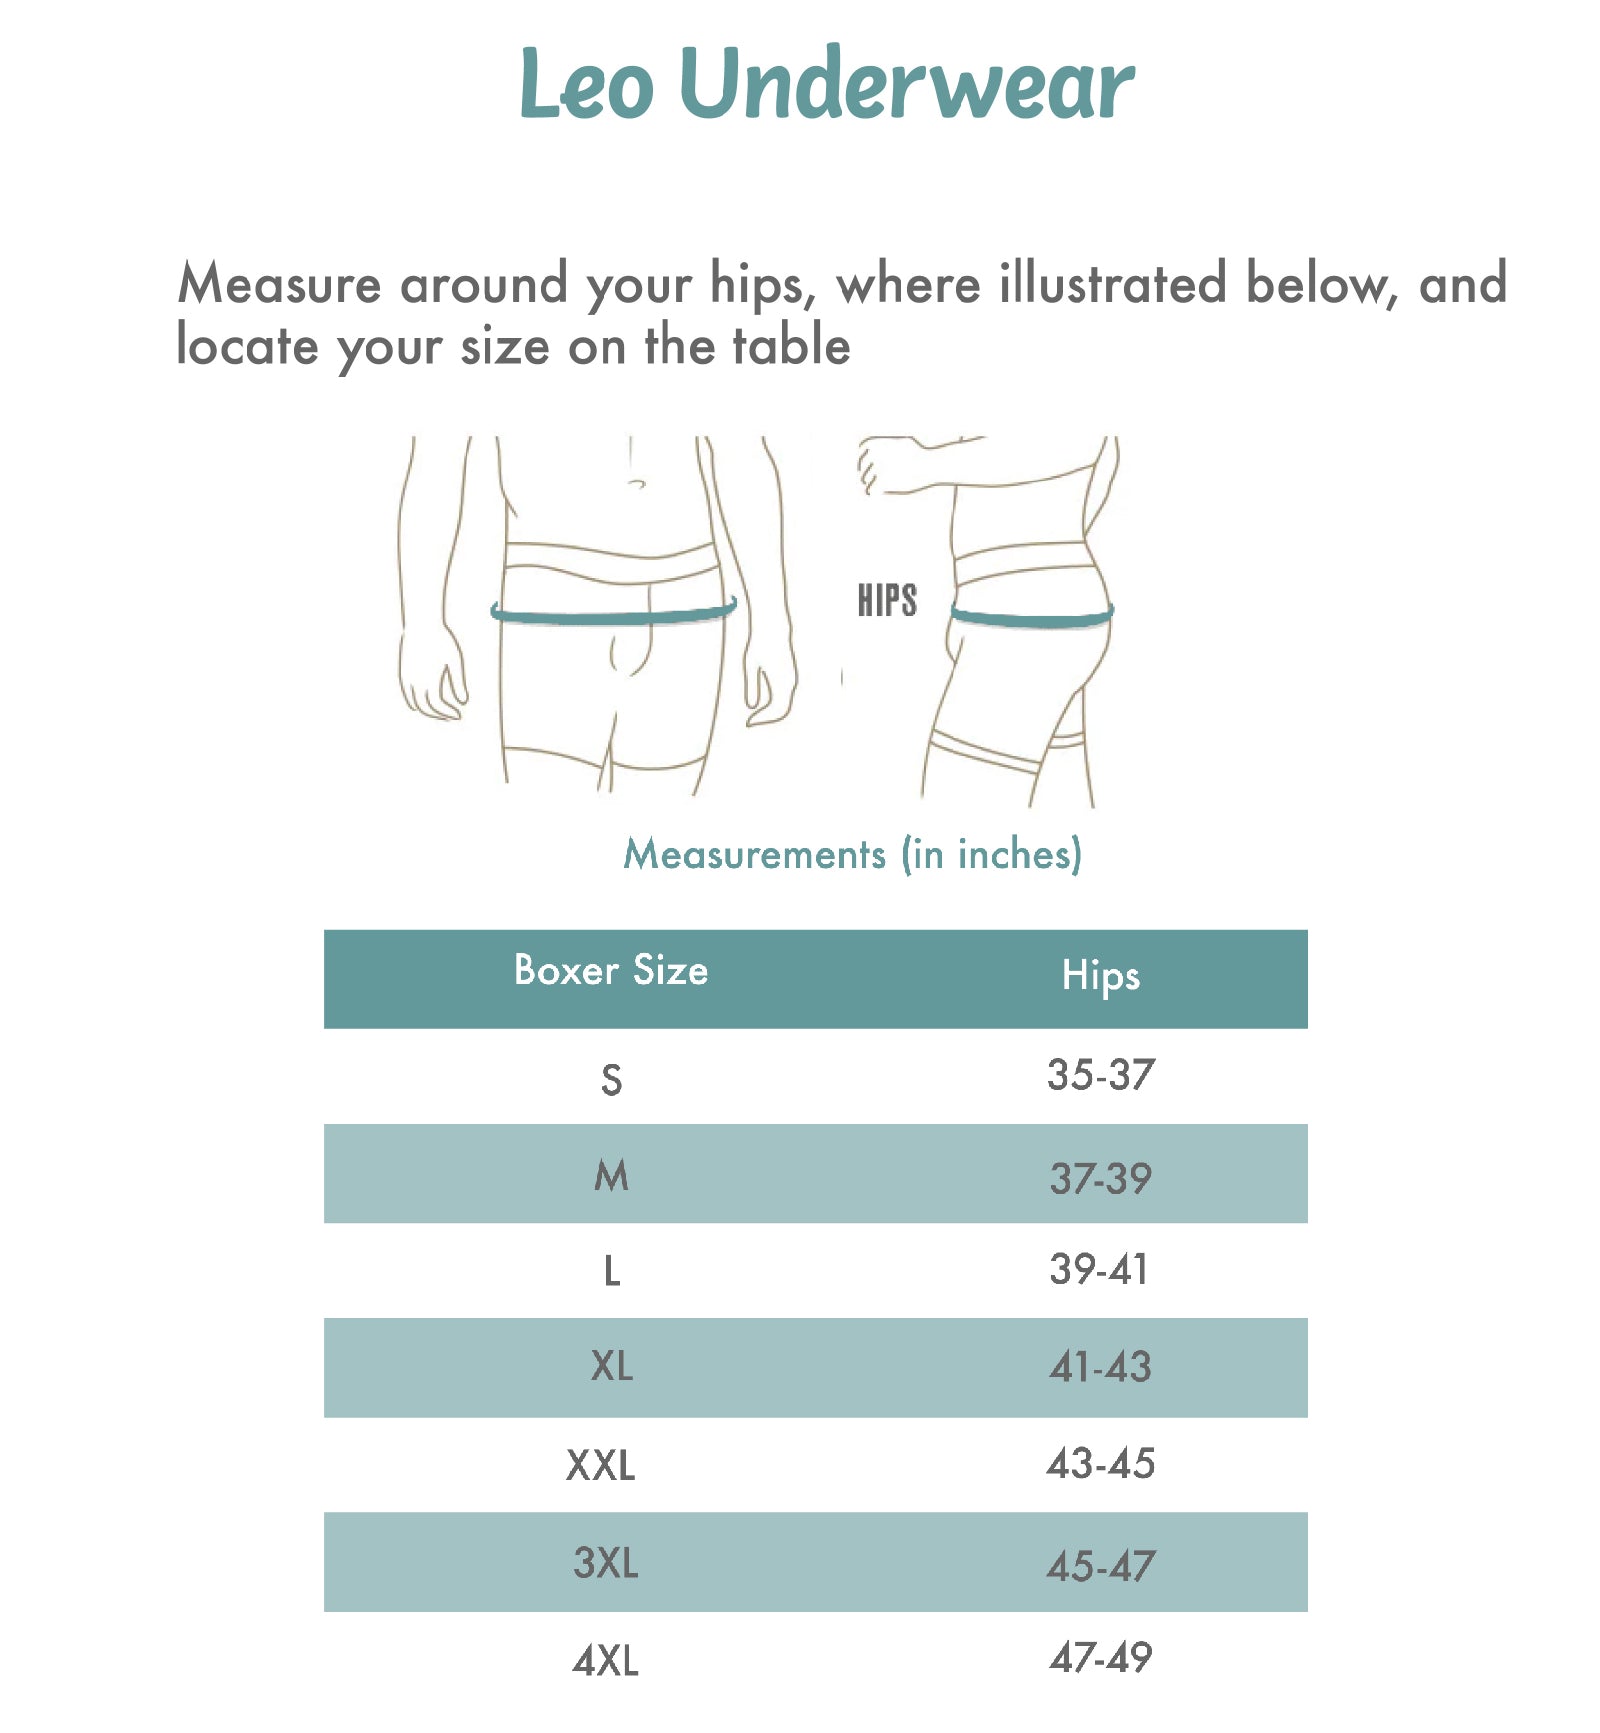 LEO Men's Flex-Fit Cotton Boxer Brief (033305),Medium,Gray - Gray,Medium